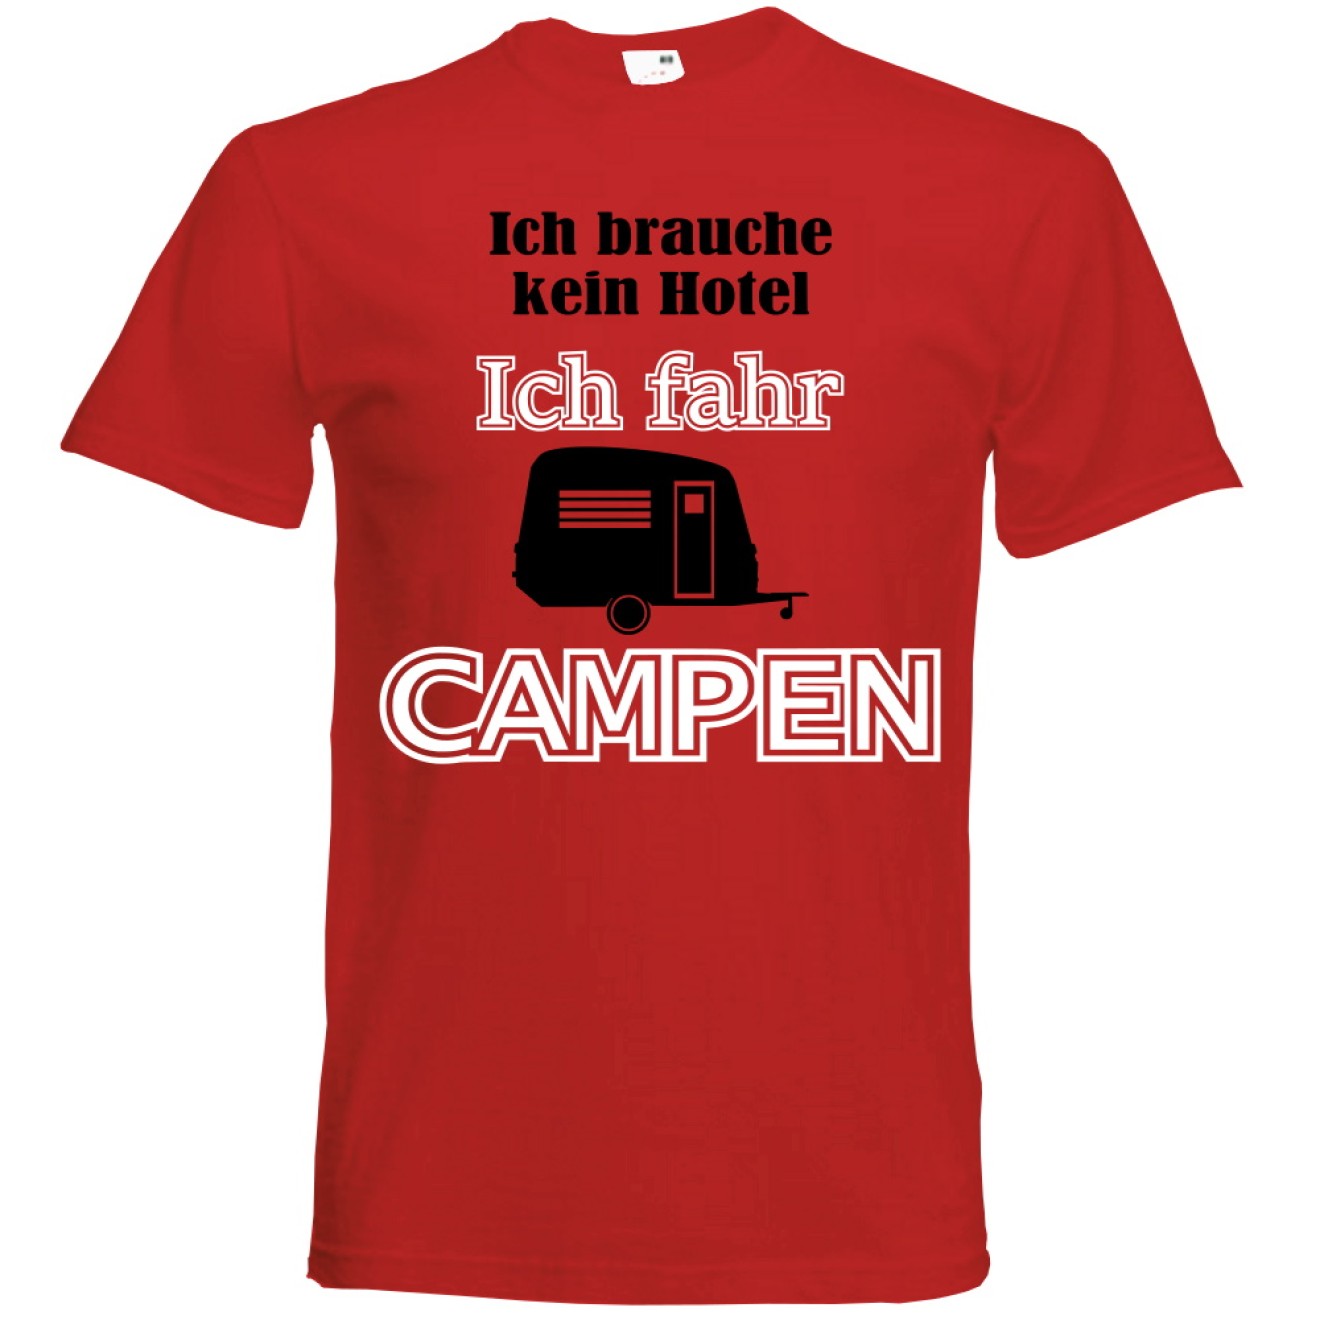 T-Shirt Camping - Kein Hotel (Wohnwagen) - Freie Farbwahl